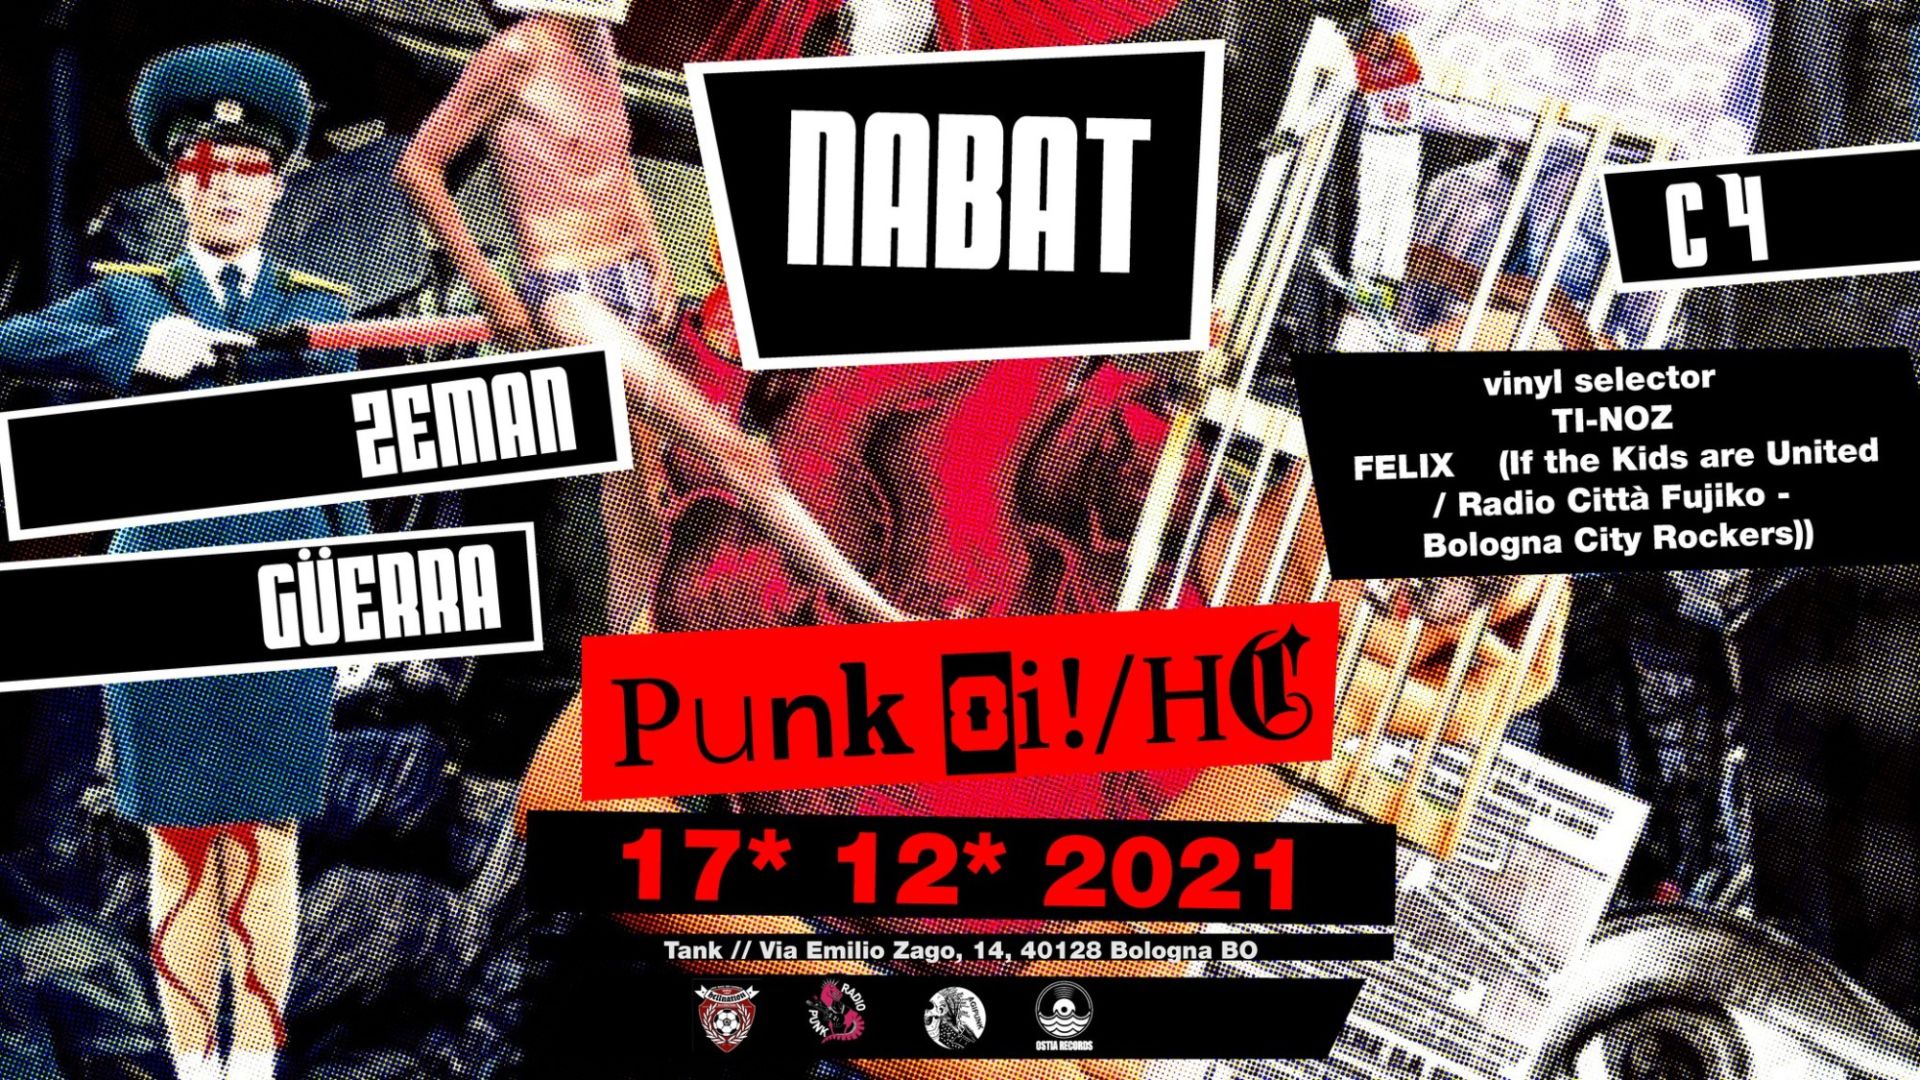 Tank-punk oi!/HC n°1| NABAT-GÜERRA-ZEMAN-C4 + vinyl selector